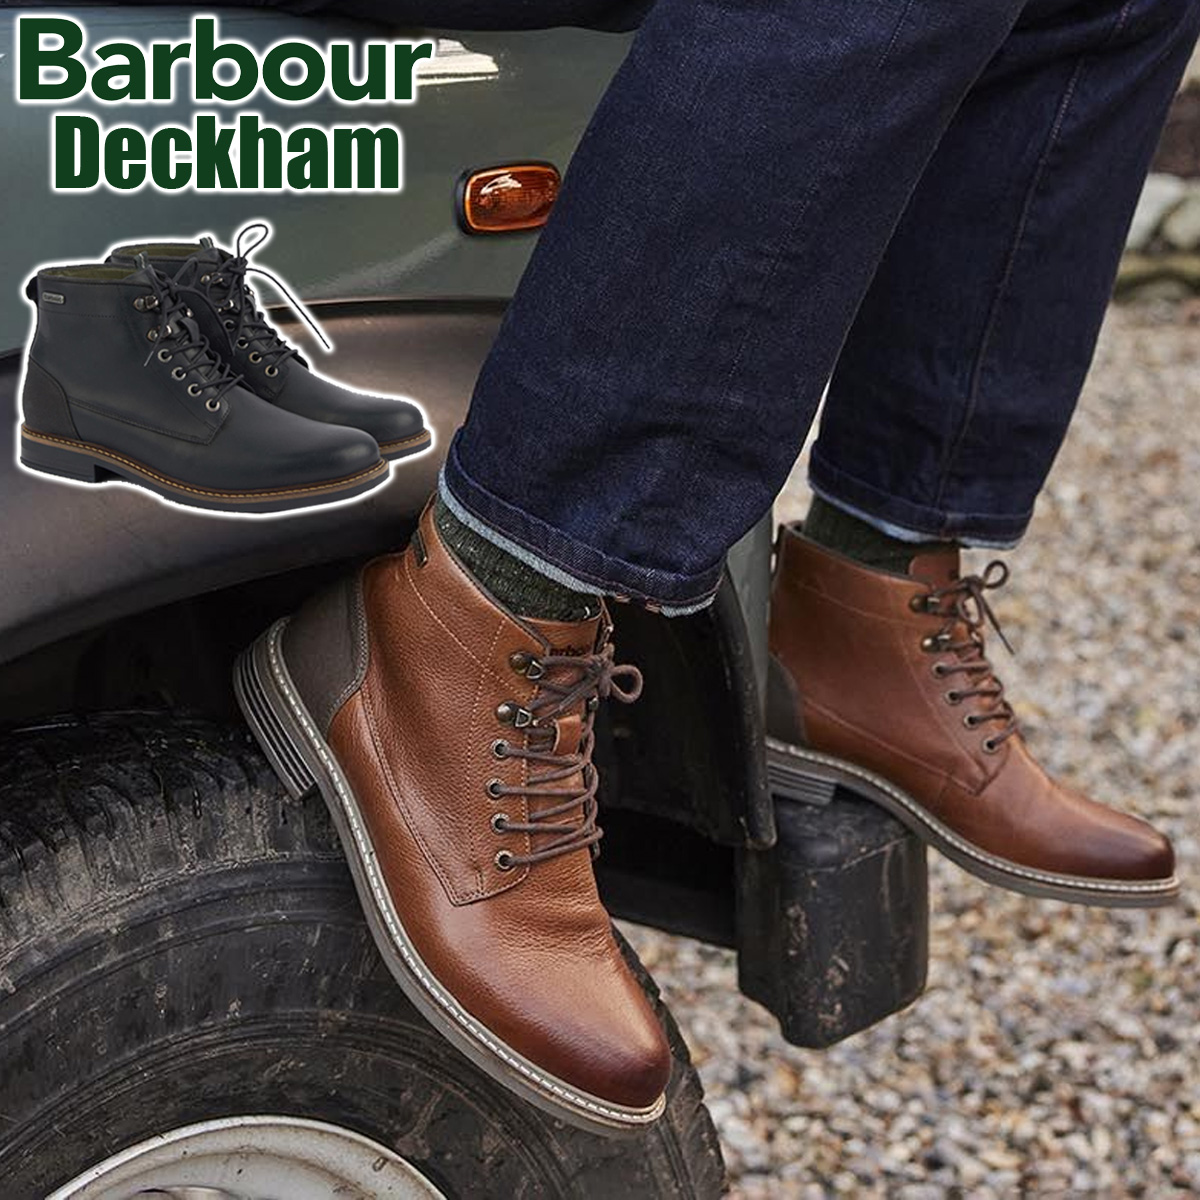 Barbour Deckham Boots - Colour Choice - Apex 66